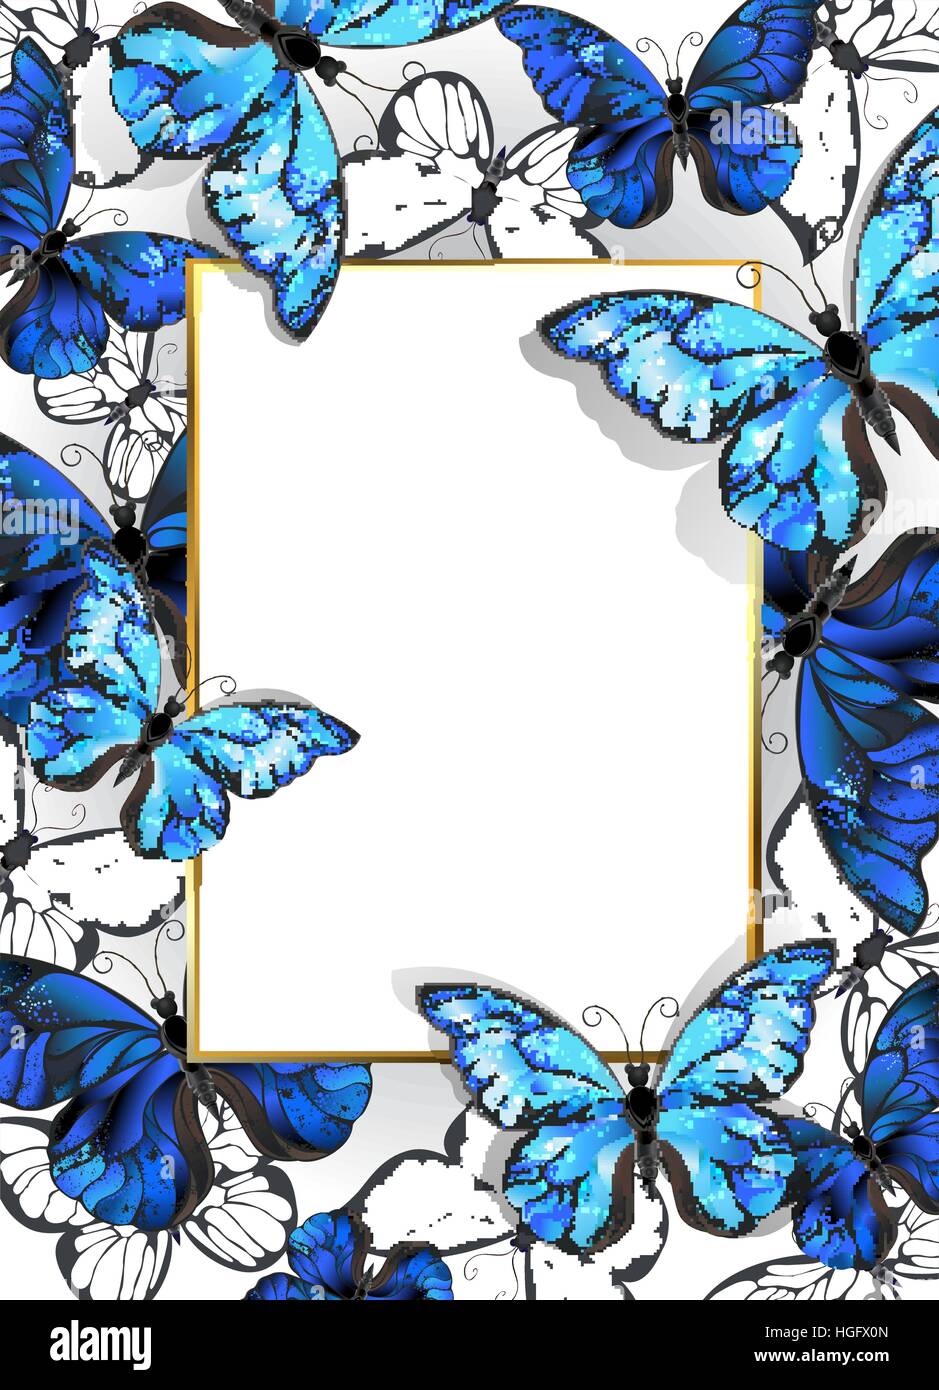 Rechteckige Banner mit Goldrahmen und blau, realistisch, Schmetterlinge Morpho auf hellem Hintergrund. Design mit blauer Schmetterlinge Morpho. Stock Vektor